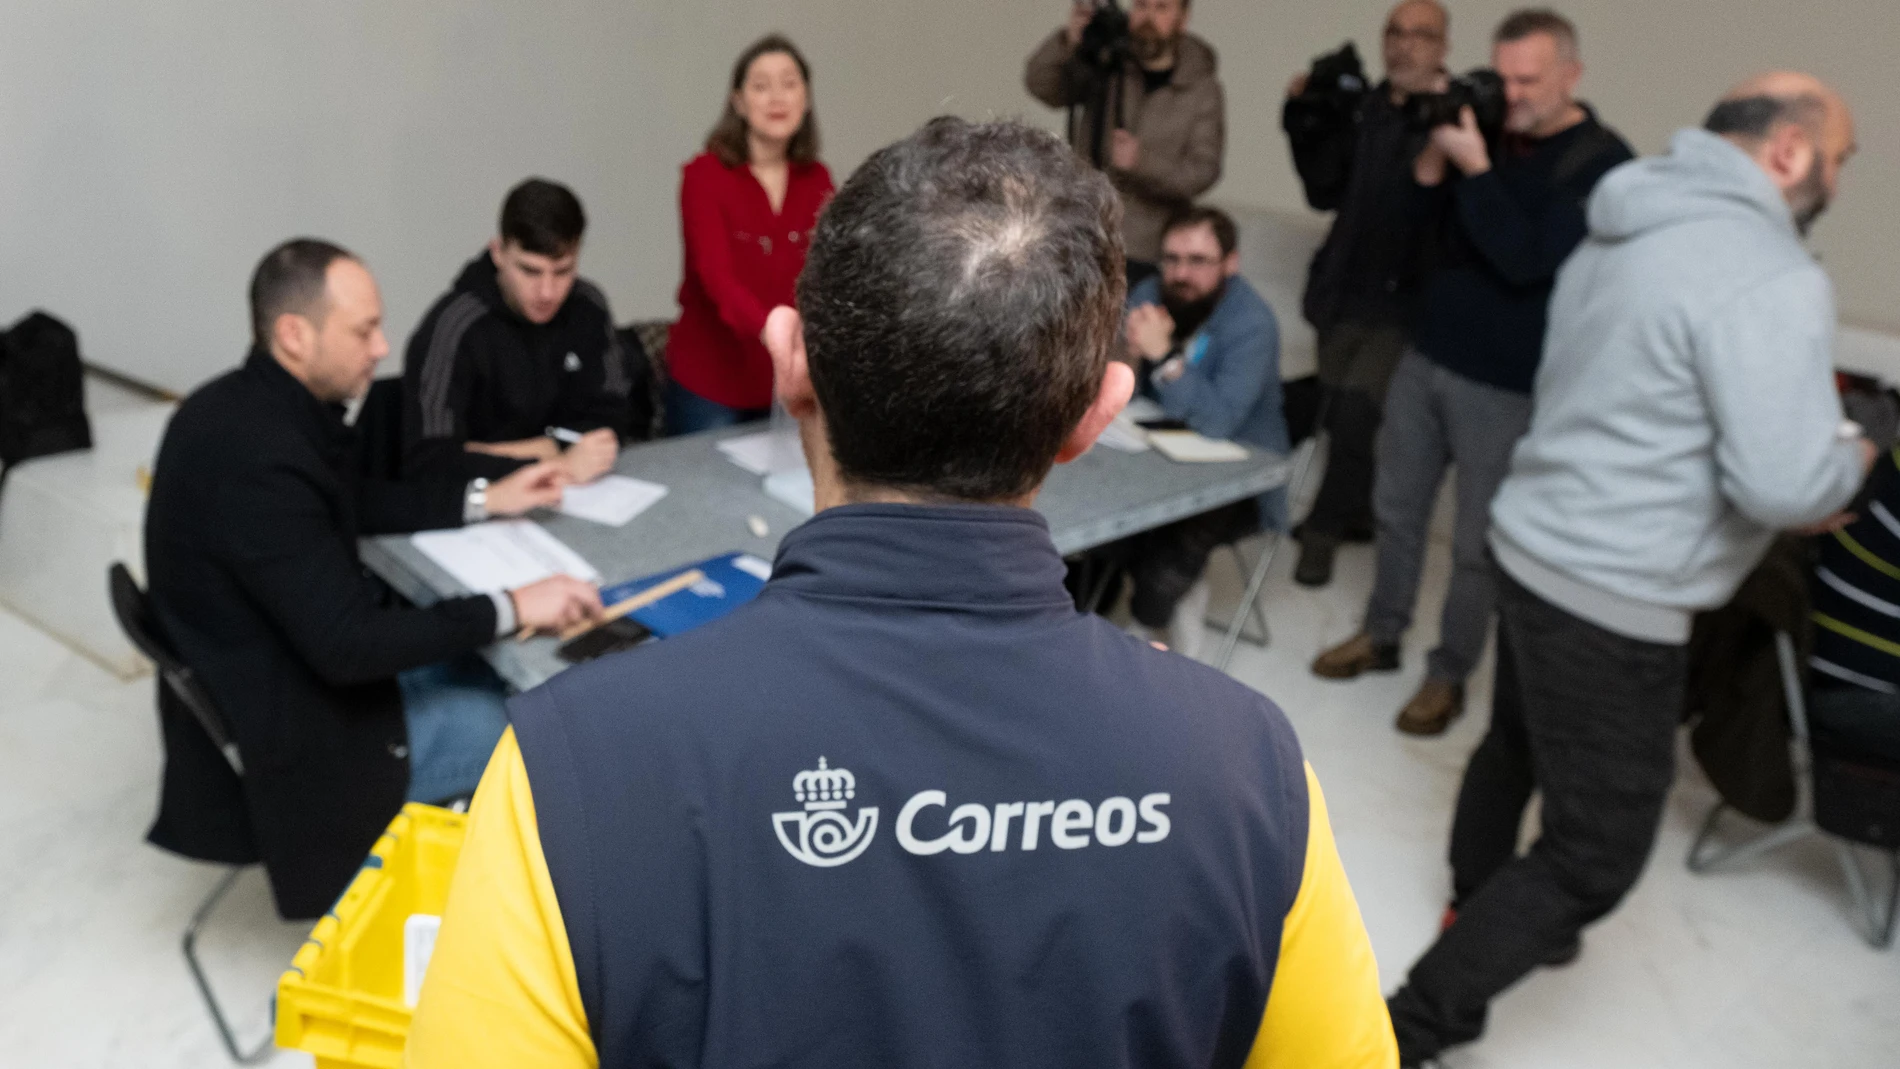 Un trabajador de Correos lleva los votos realizados por correo a la mesa electoral, en el Centro Galego de Arte Contemporáneo.